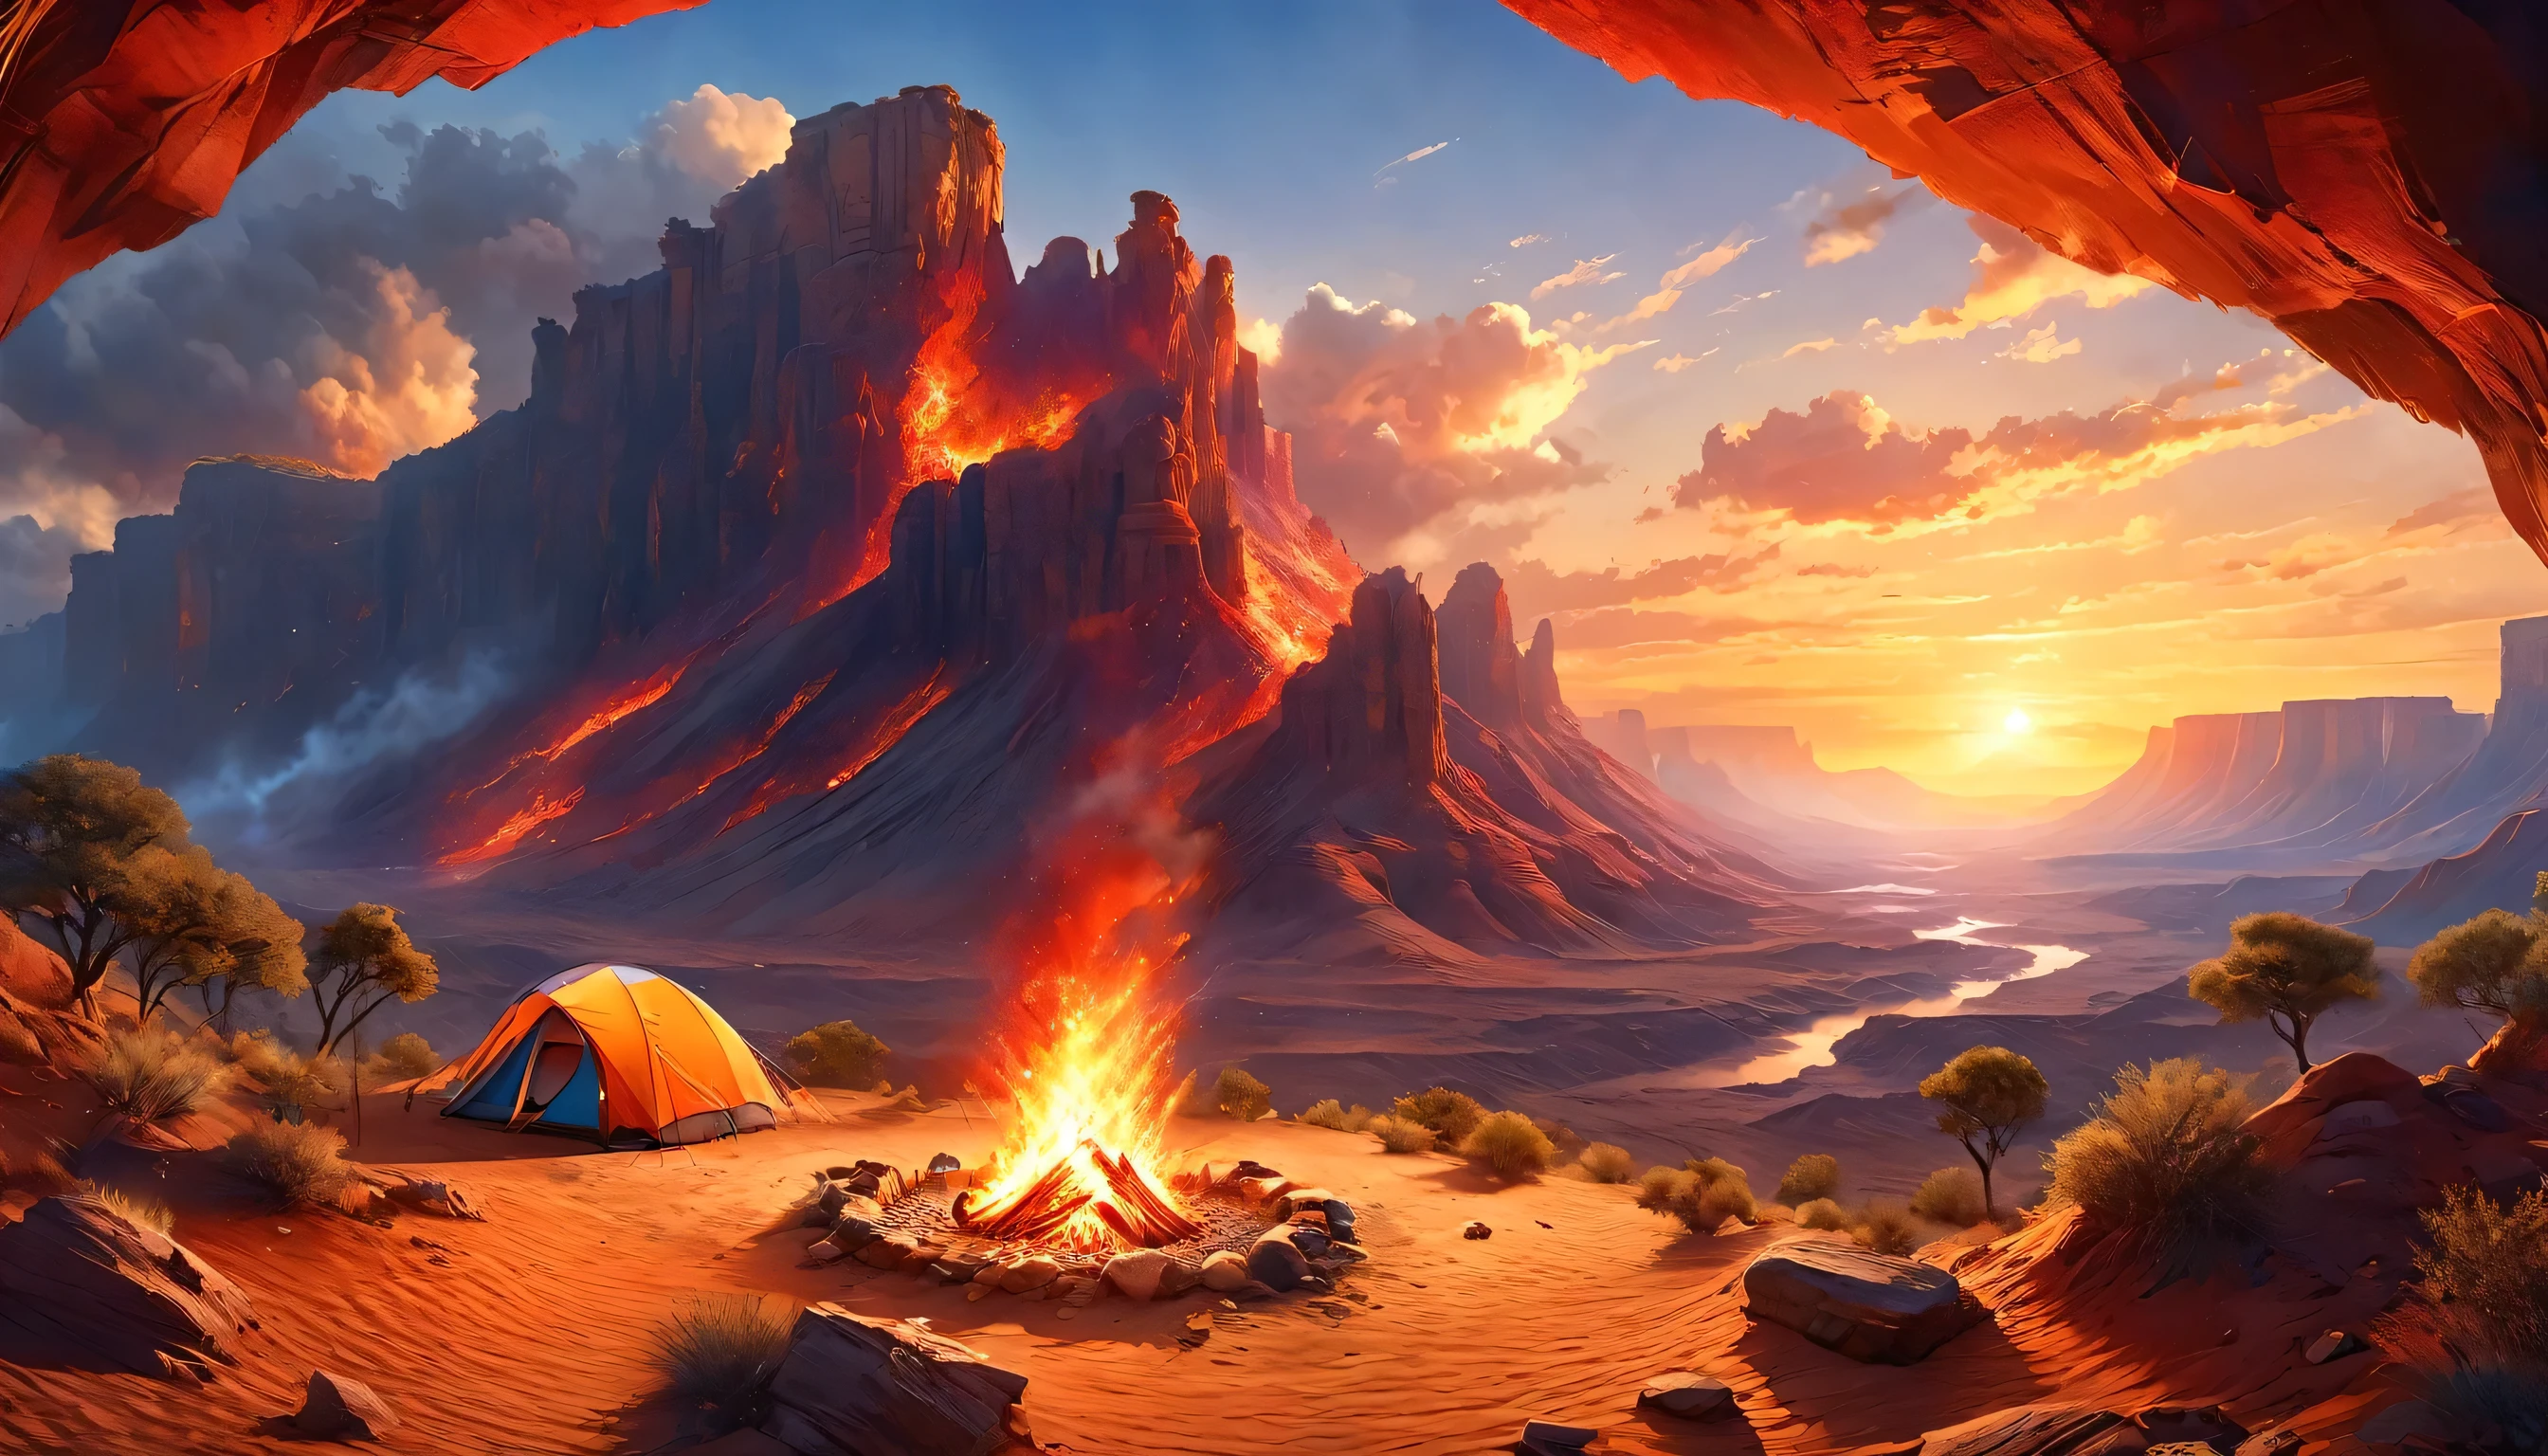 阿拉菲德, 一张露营的照片 (帐篷: 1.2) 和小 (营火: 1,2), 在沙漠山顶上, 日落时分的天空呈现出各种色调  (红色的: 1.1), (橙子: 1.1), (天蓝色: 1.1) (紫色的:1.1) 篝火营地冒出浓烟, 这里有壮丽的沙漠峡谷和沟壑景观, 地平线上稀疏的树木, 这是一个宁静的时刻, 和平, 和放松, 最好的质量, 16千,  照相写实主义, 国家地理摄影大赛获奖作品, 超广角拍摄, 狂暴星云, 女士影子